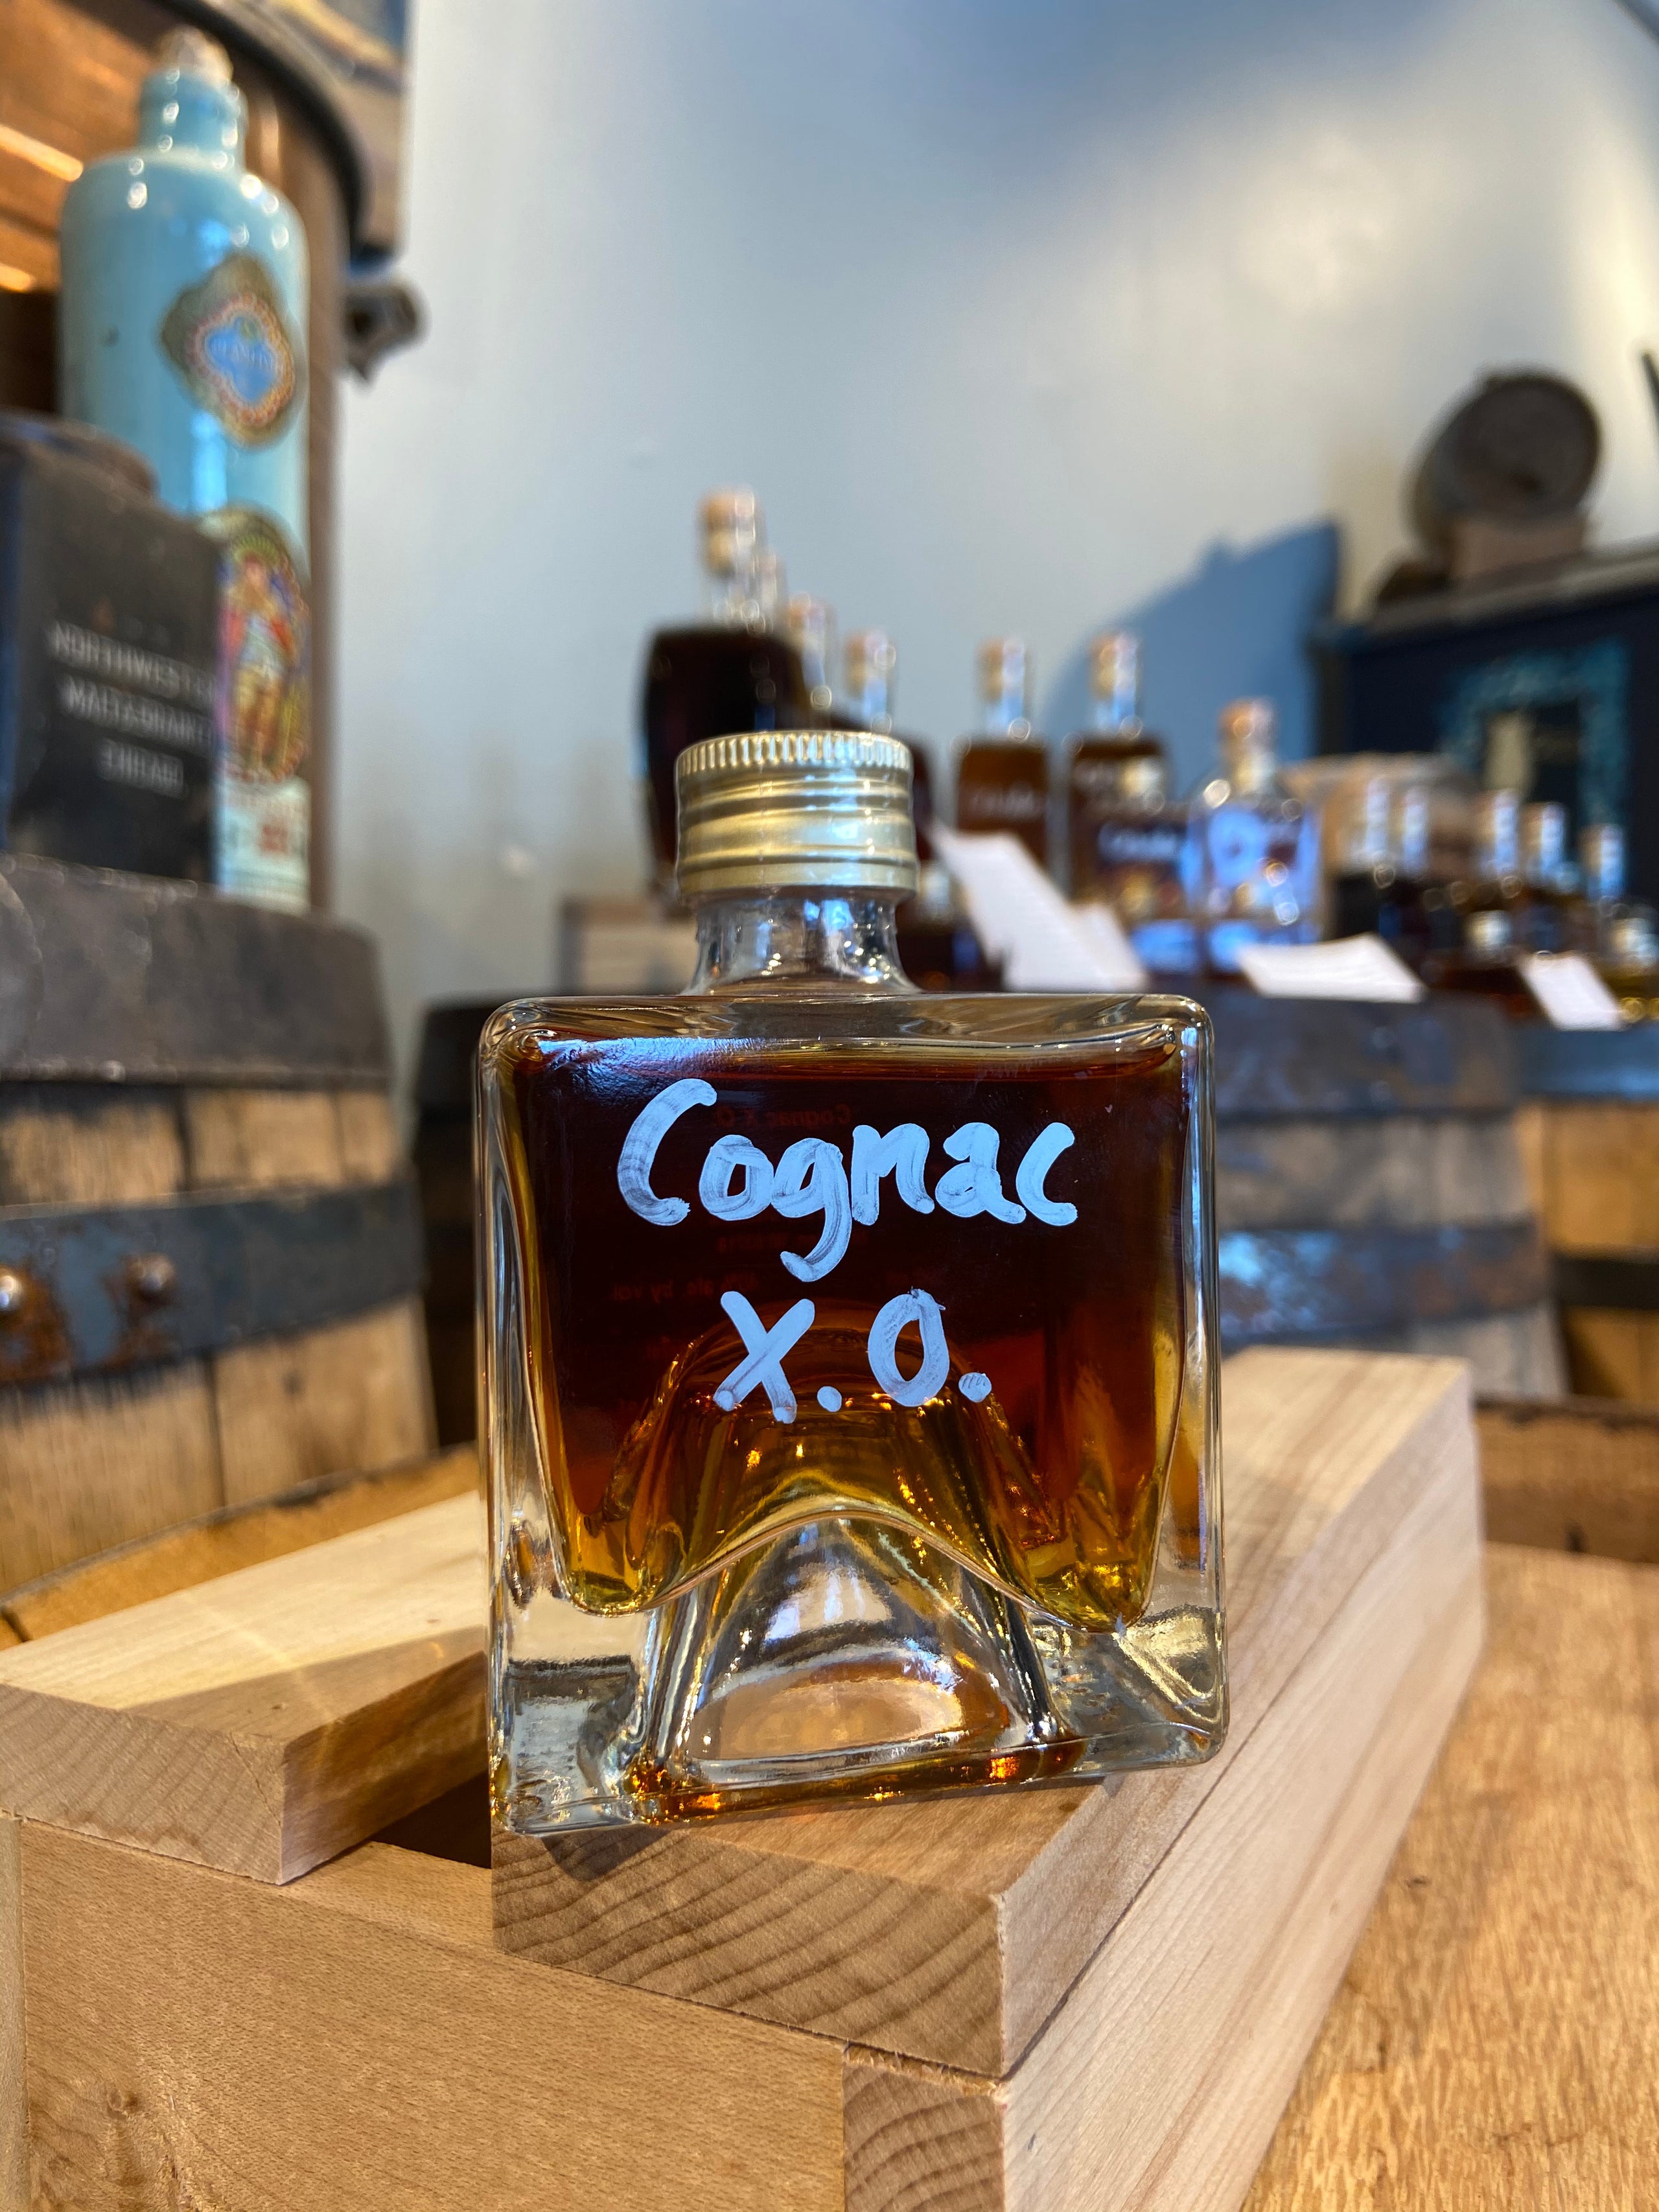 Seguinot Cognac XO